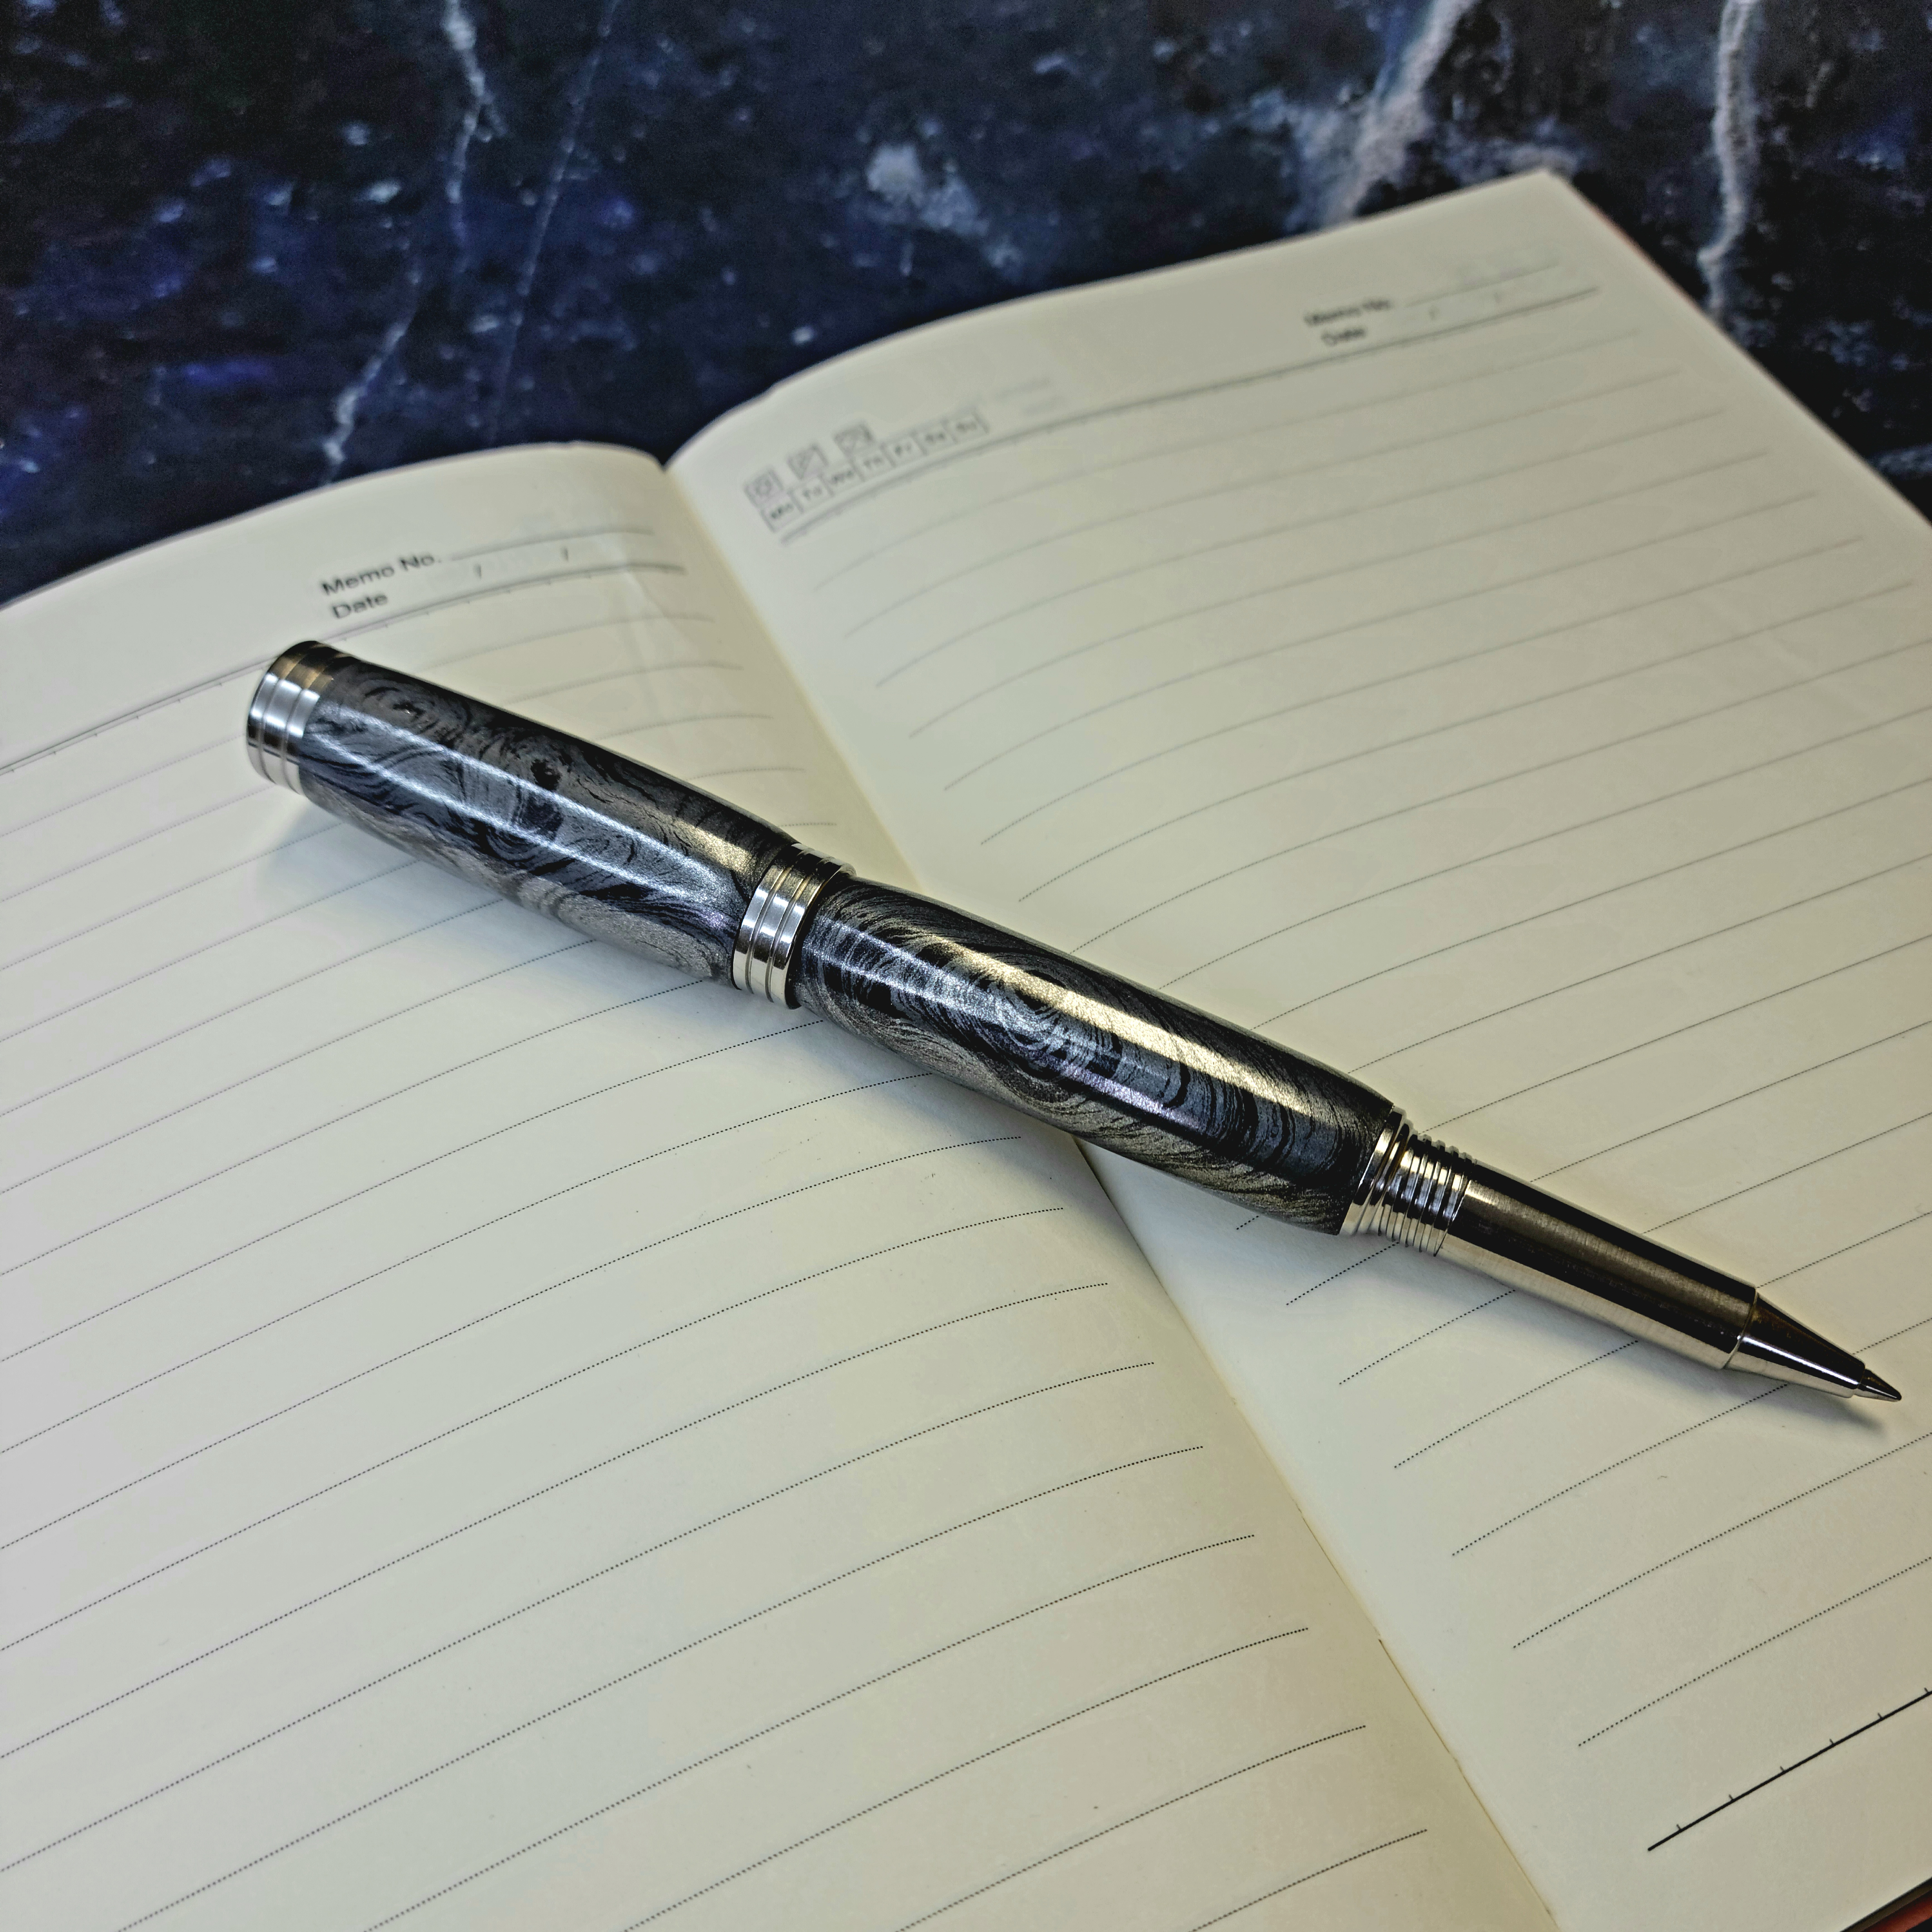 Desire, handmade stainless-steel rollerball pen